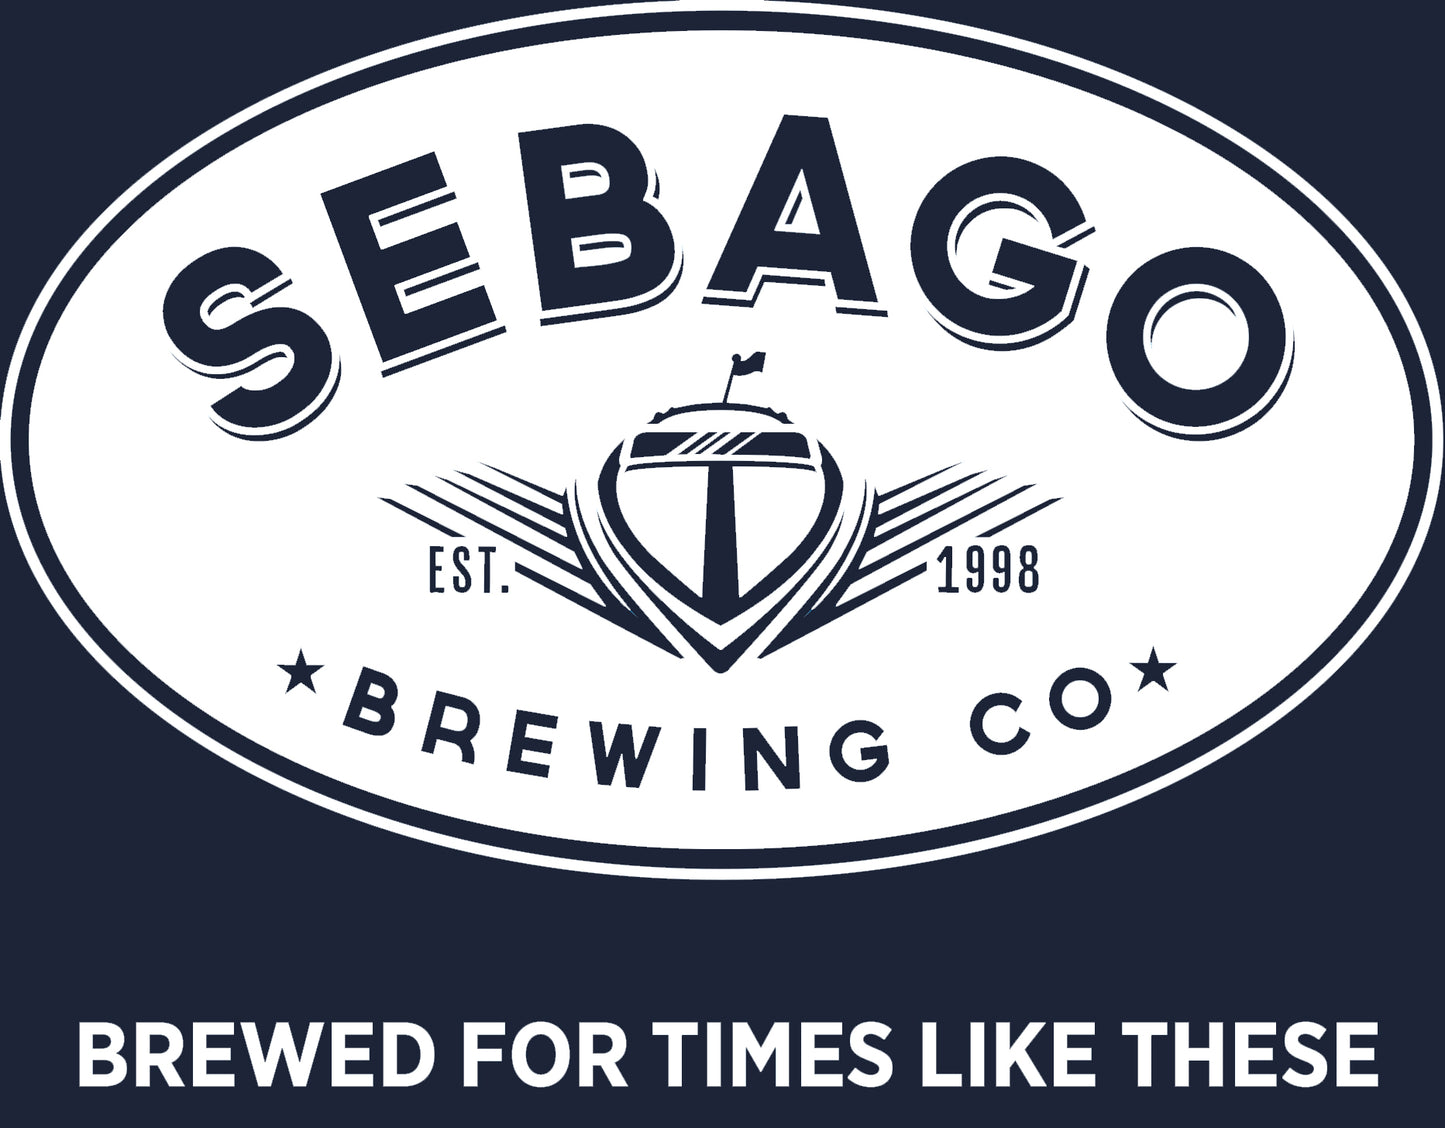 Sebago Logo Tee - Navy